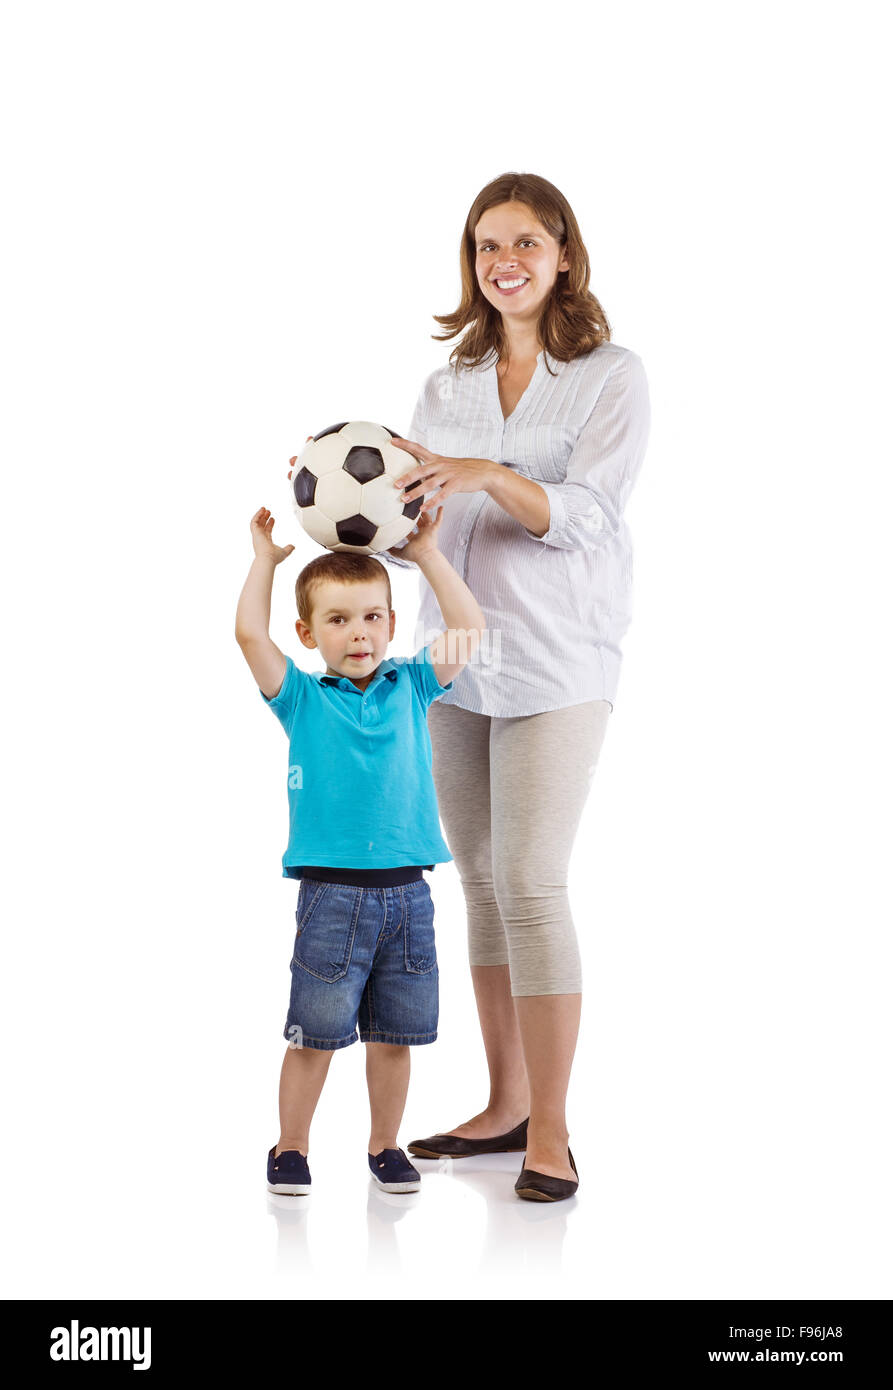 Ritratto di felice donna incinta con suo figlio giocando con il pallone da calcio Foto Stock